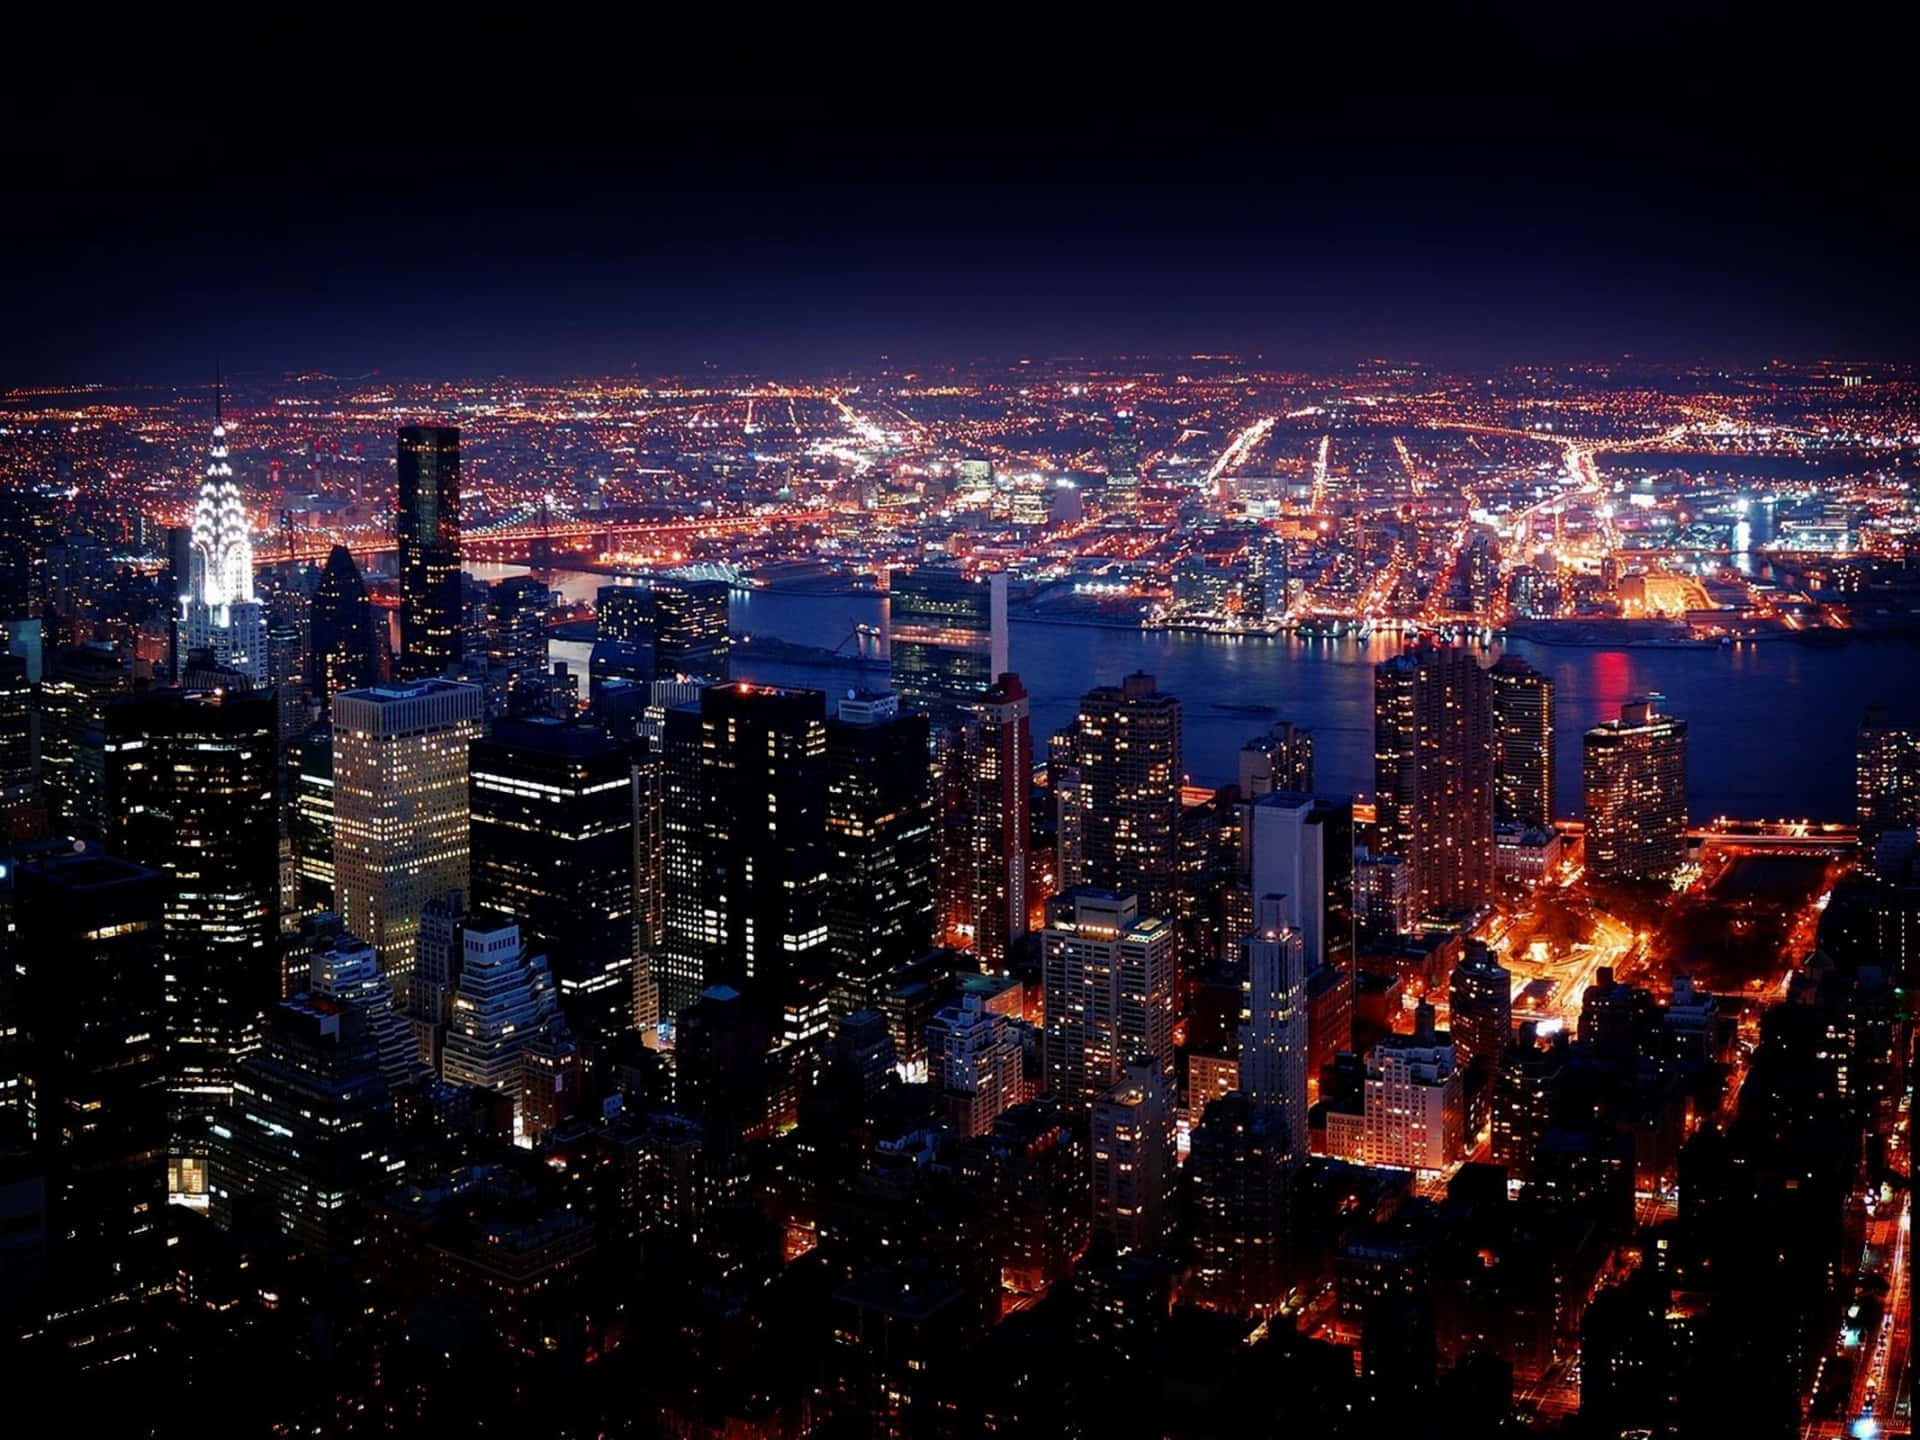 Imagende La Ciudad De Nueva York De Noche En Tonos Oscuros.